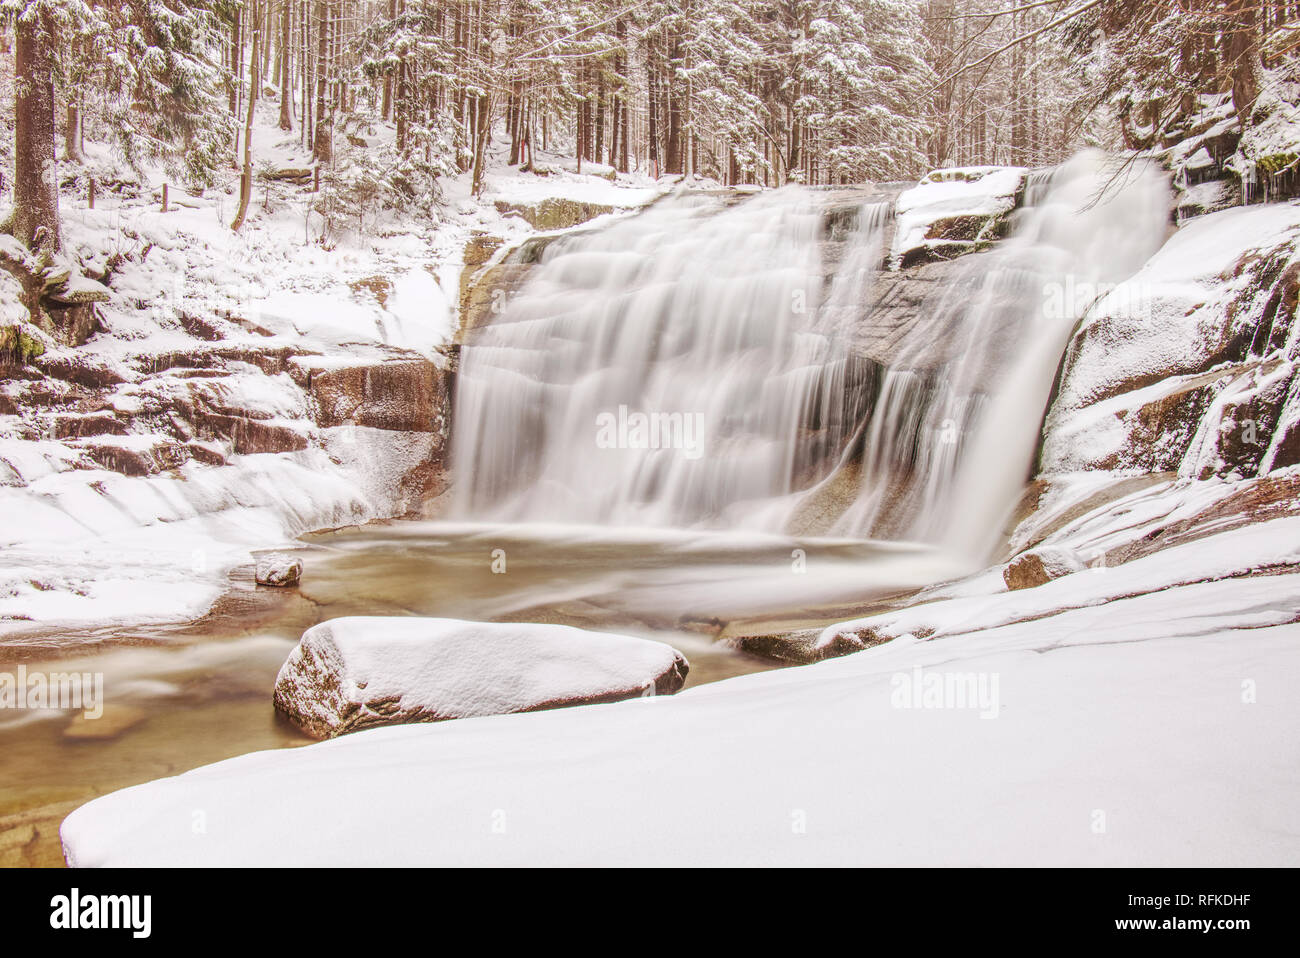 Cascata di cascata sulle rocce. Inverno Mumlava fiume. Stormy creek nella foresta vicino. Foto Stock